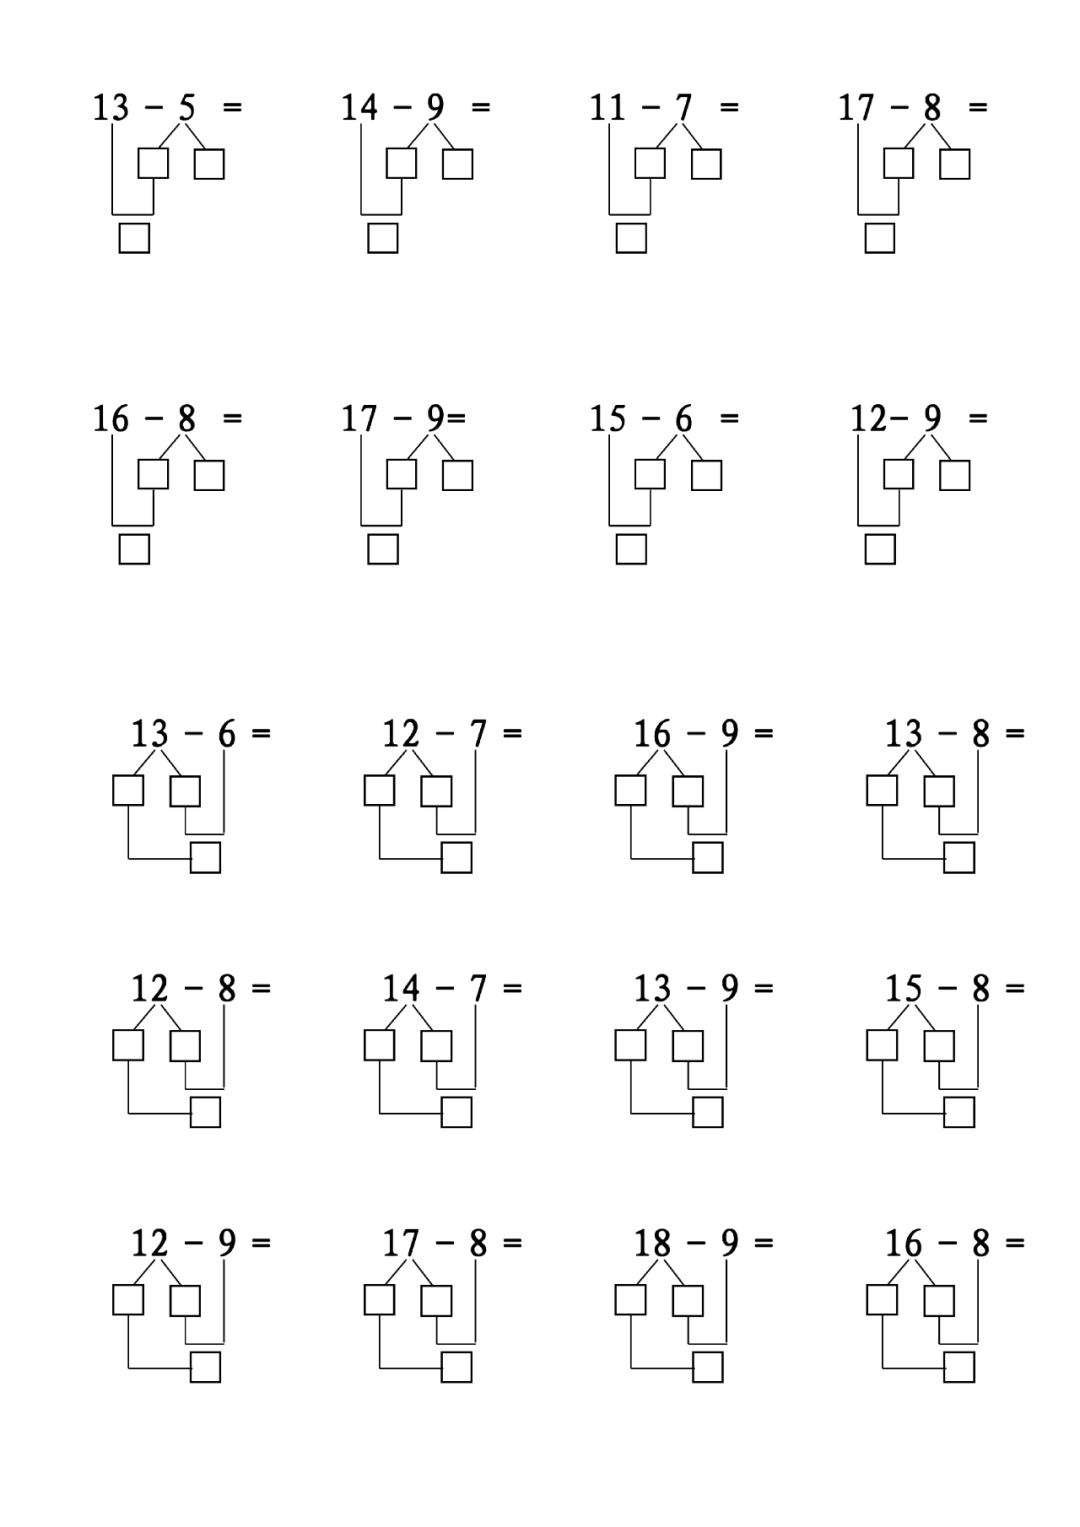 12-9=10-9 2=311-9=10-9 1=2破十法是把十几减几转化为10以内减法和10